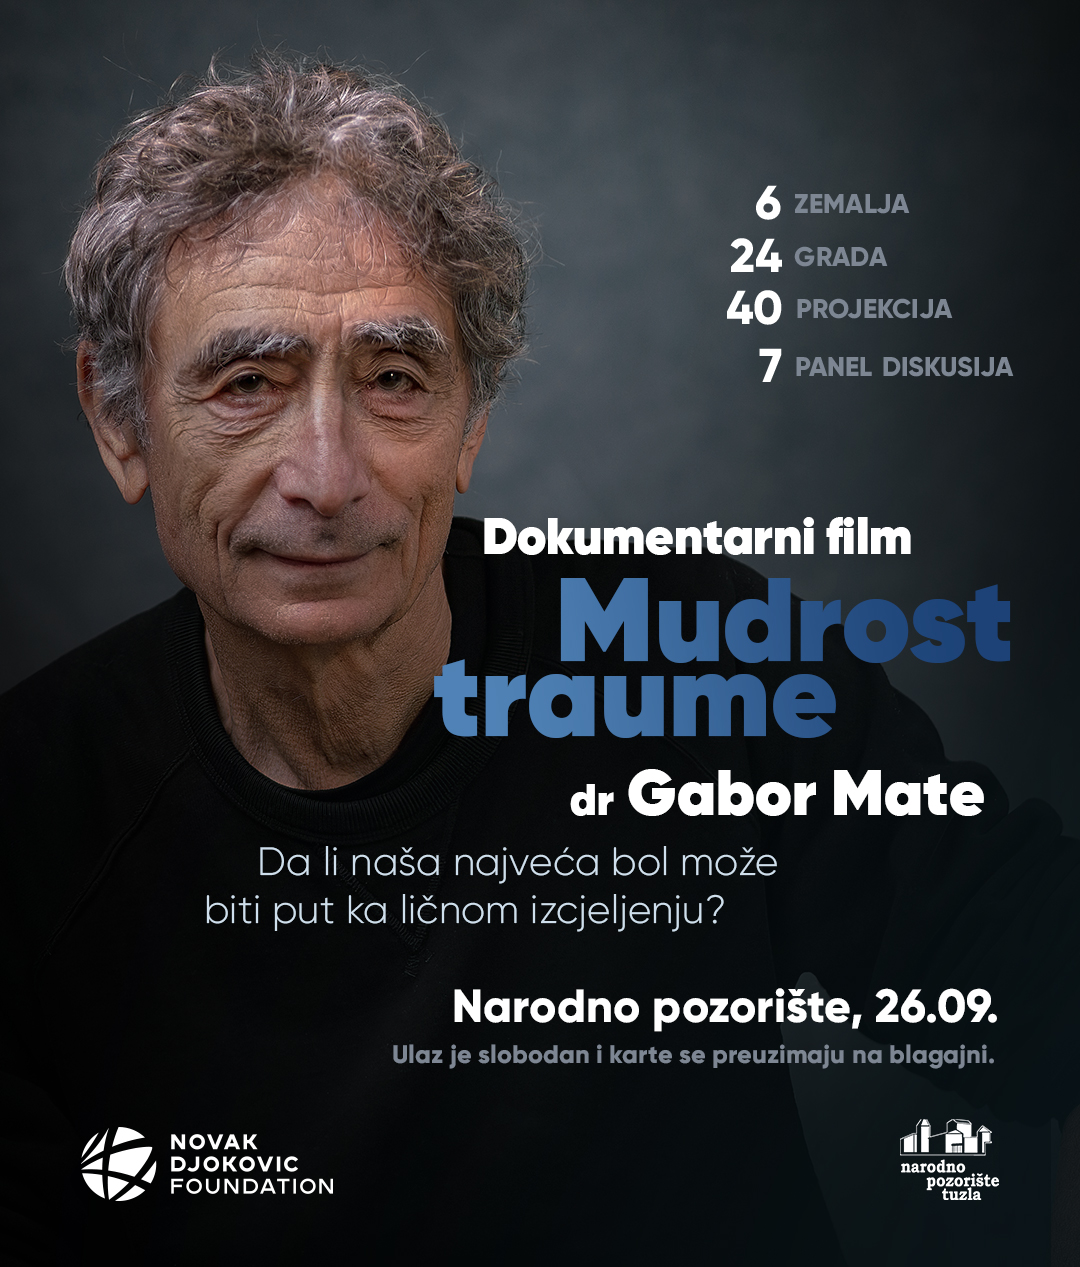 Pogledajte dokumentarni film “Mudrost traume” dr Gabora Matea u Tuzli ...